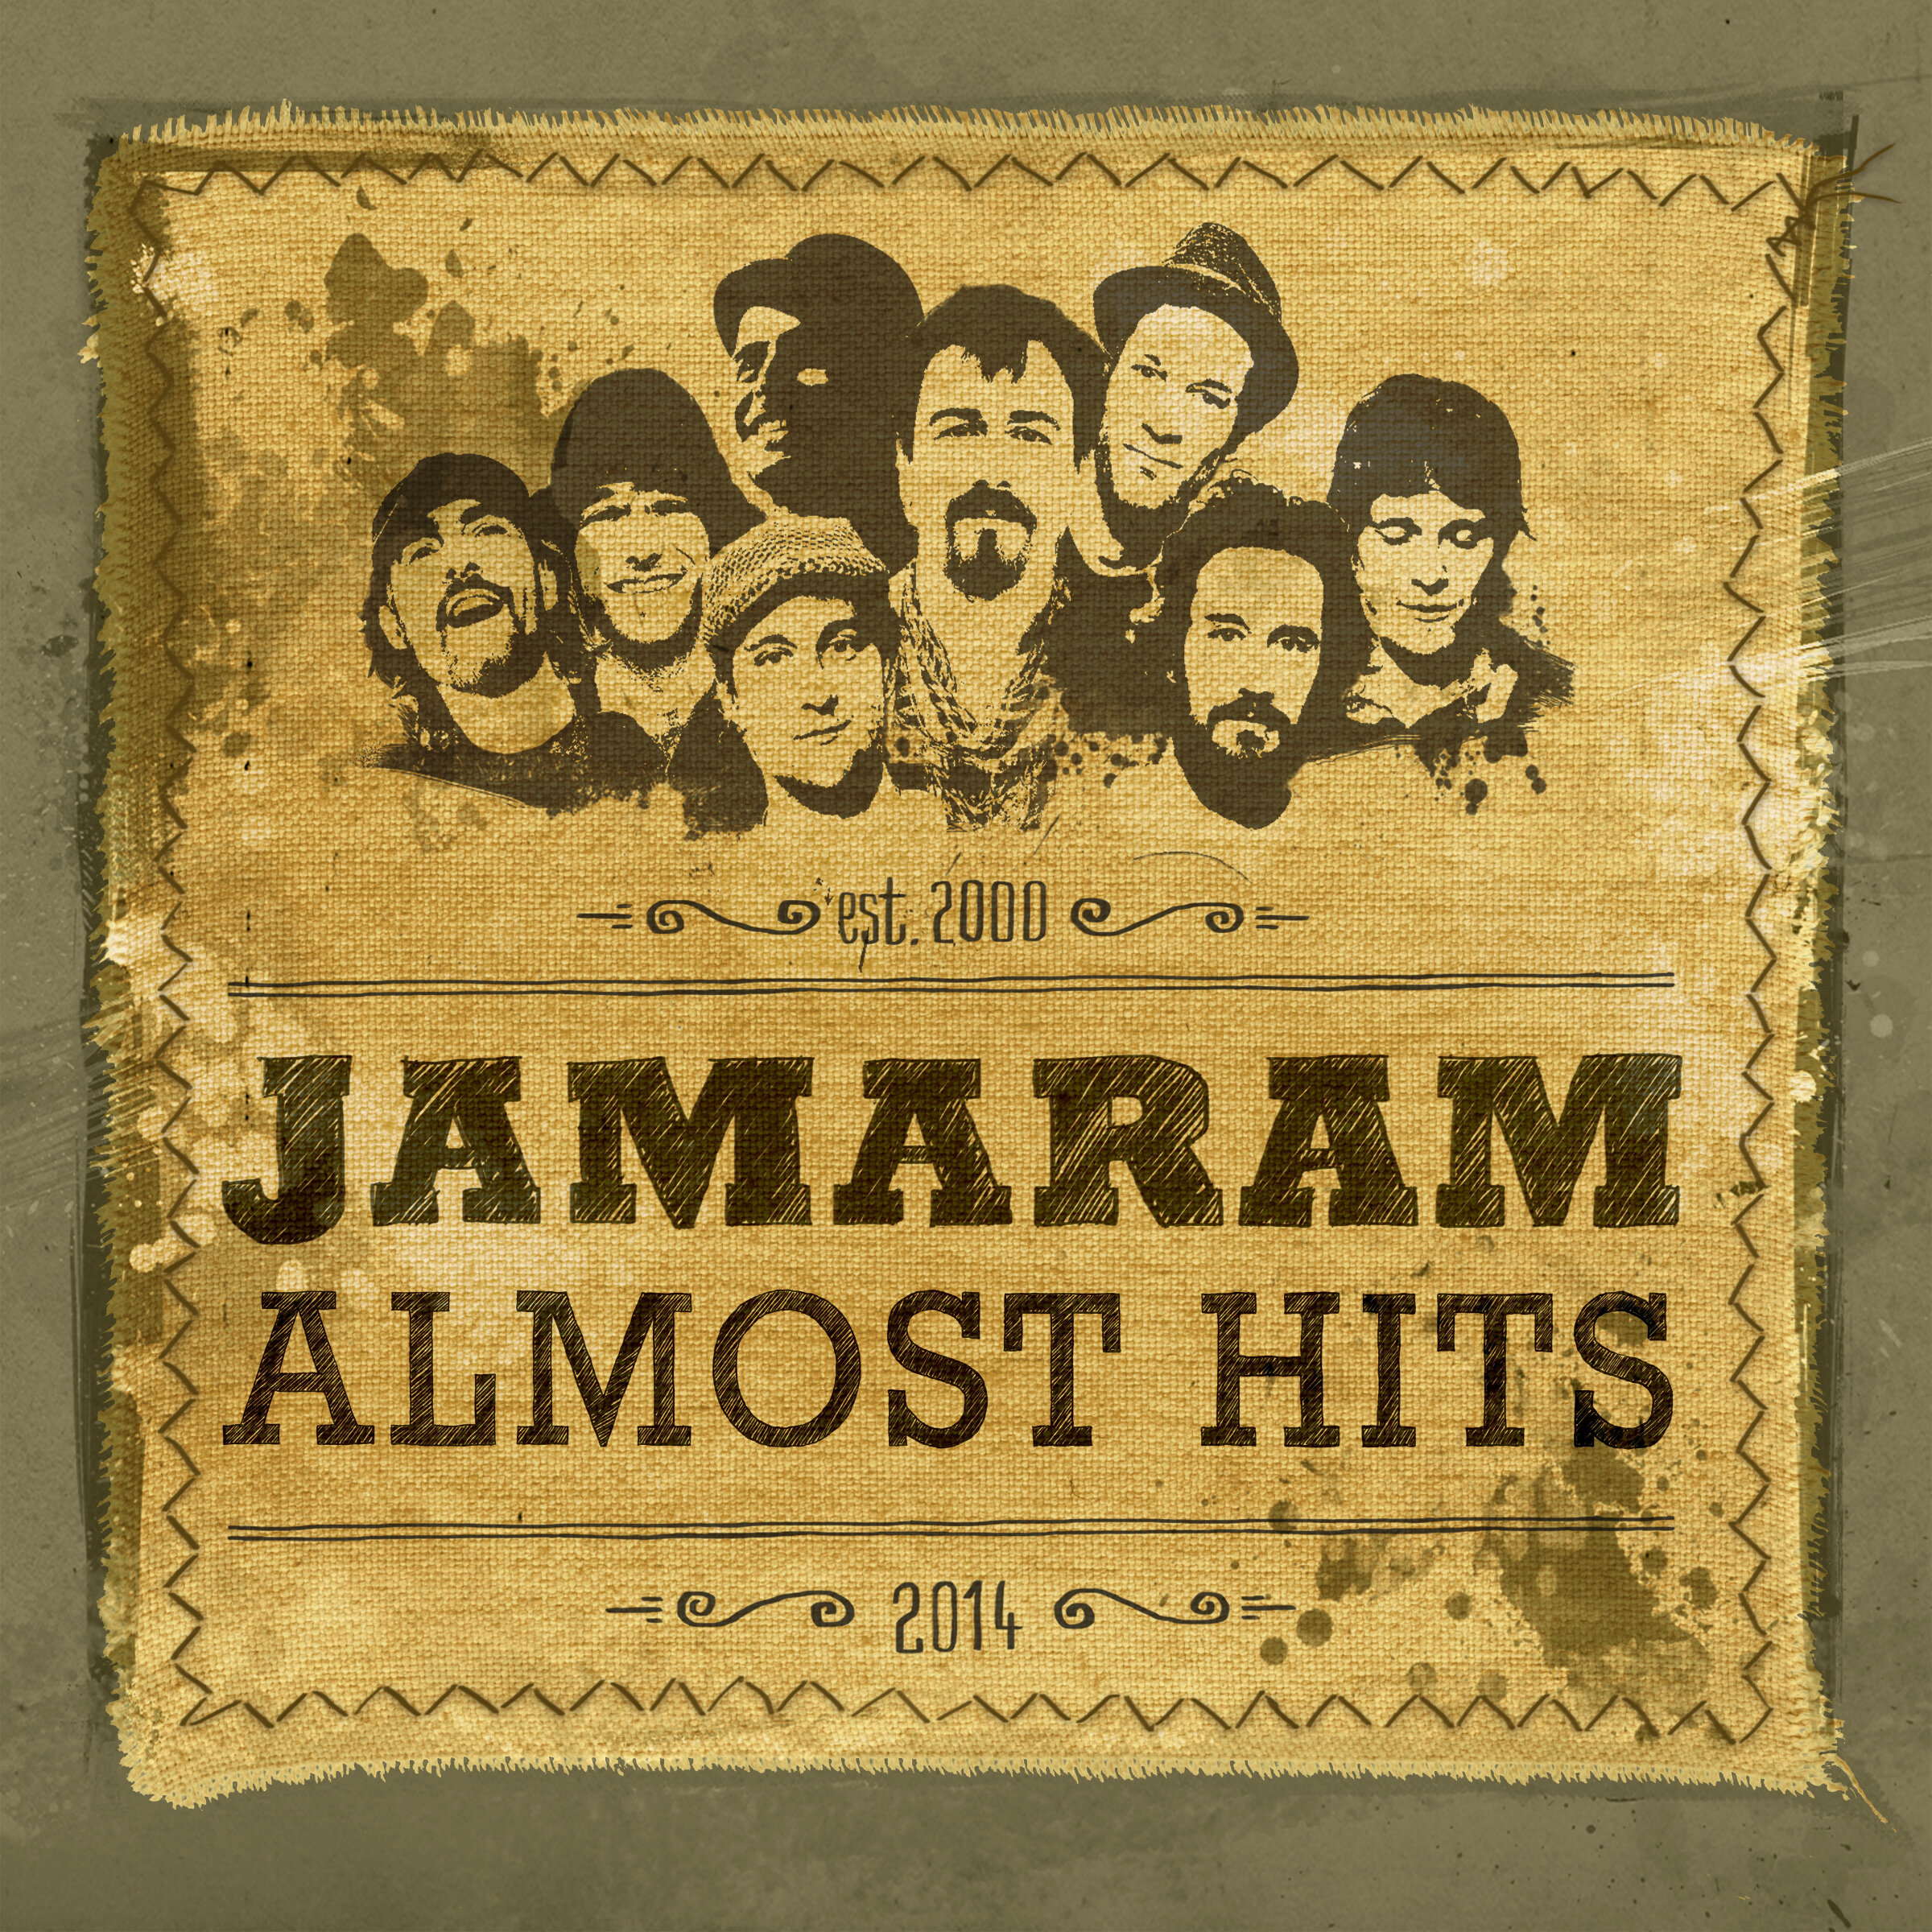 2014 - JAMARAM - Almost Hits (best-off album + DVD)